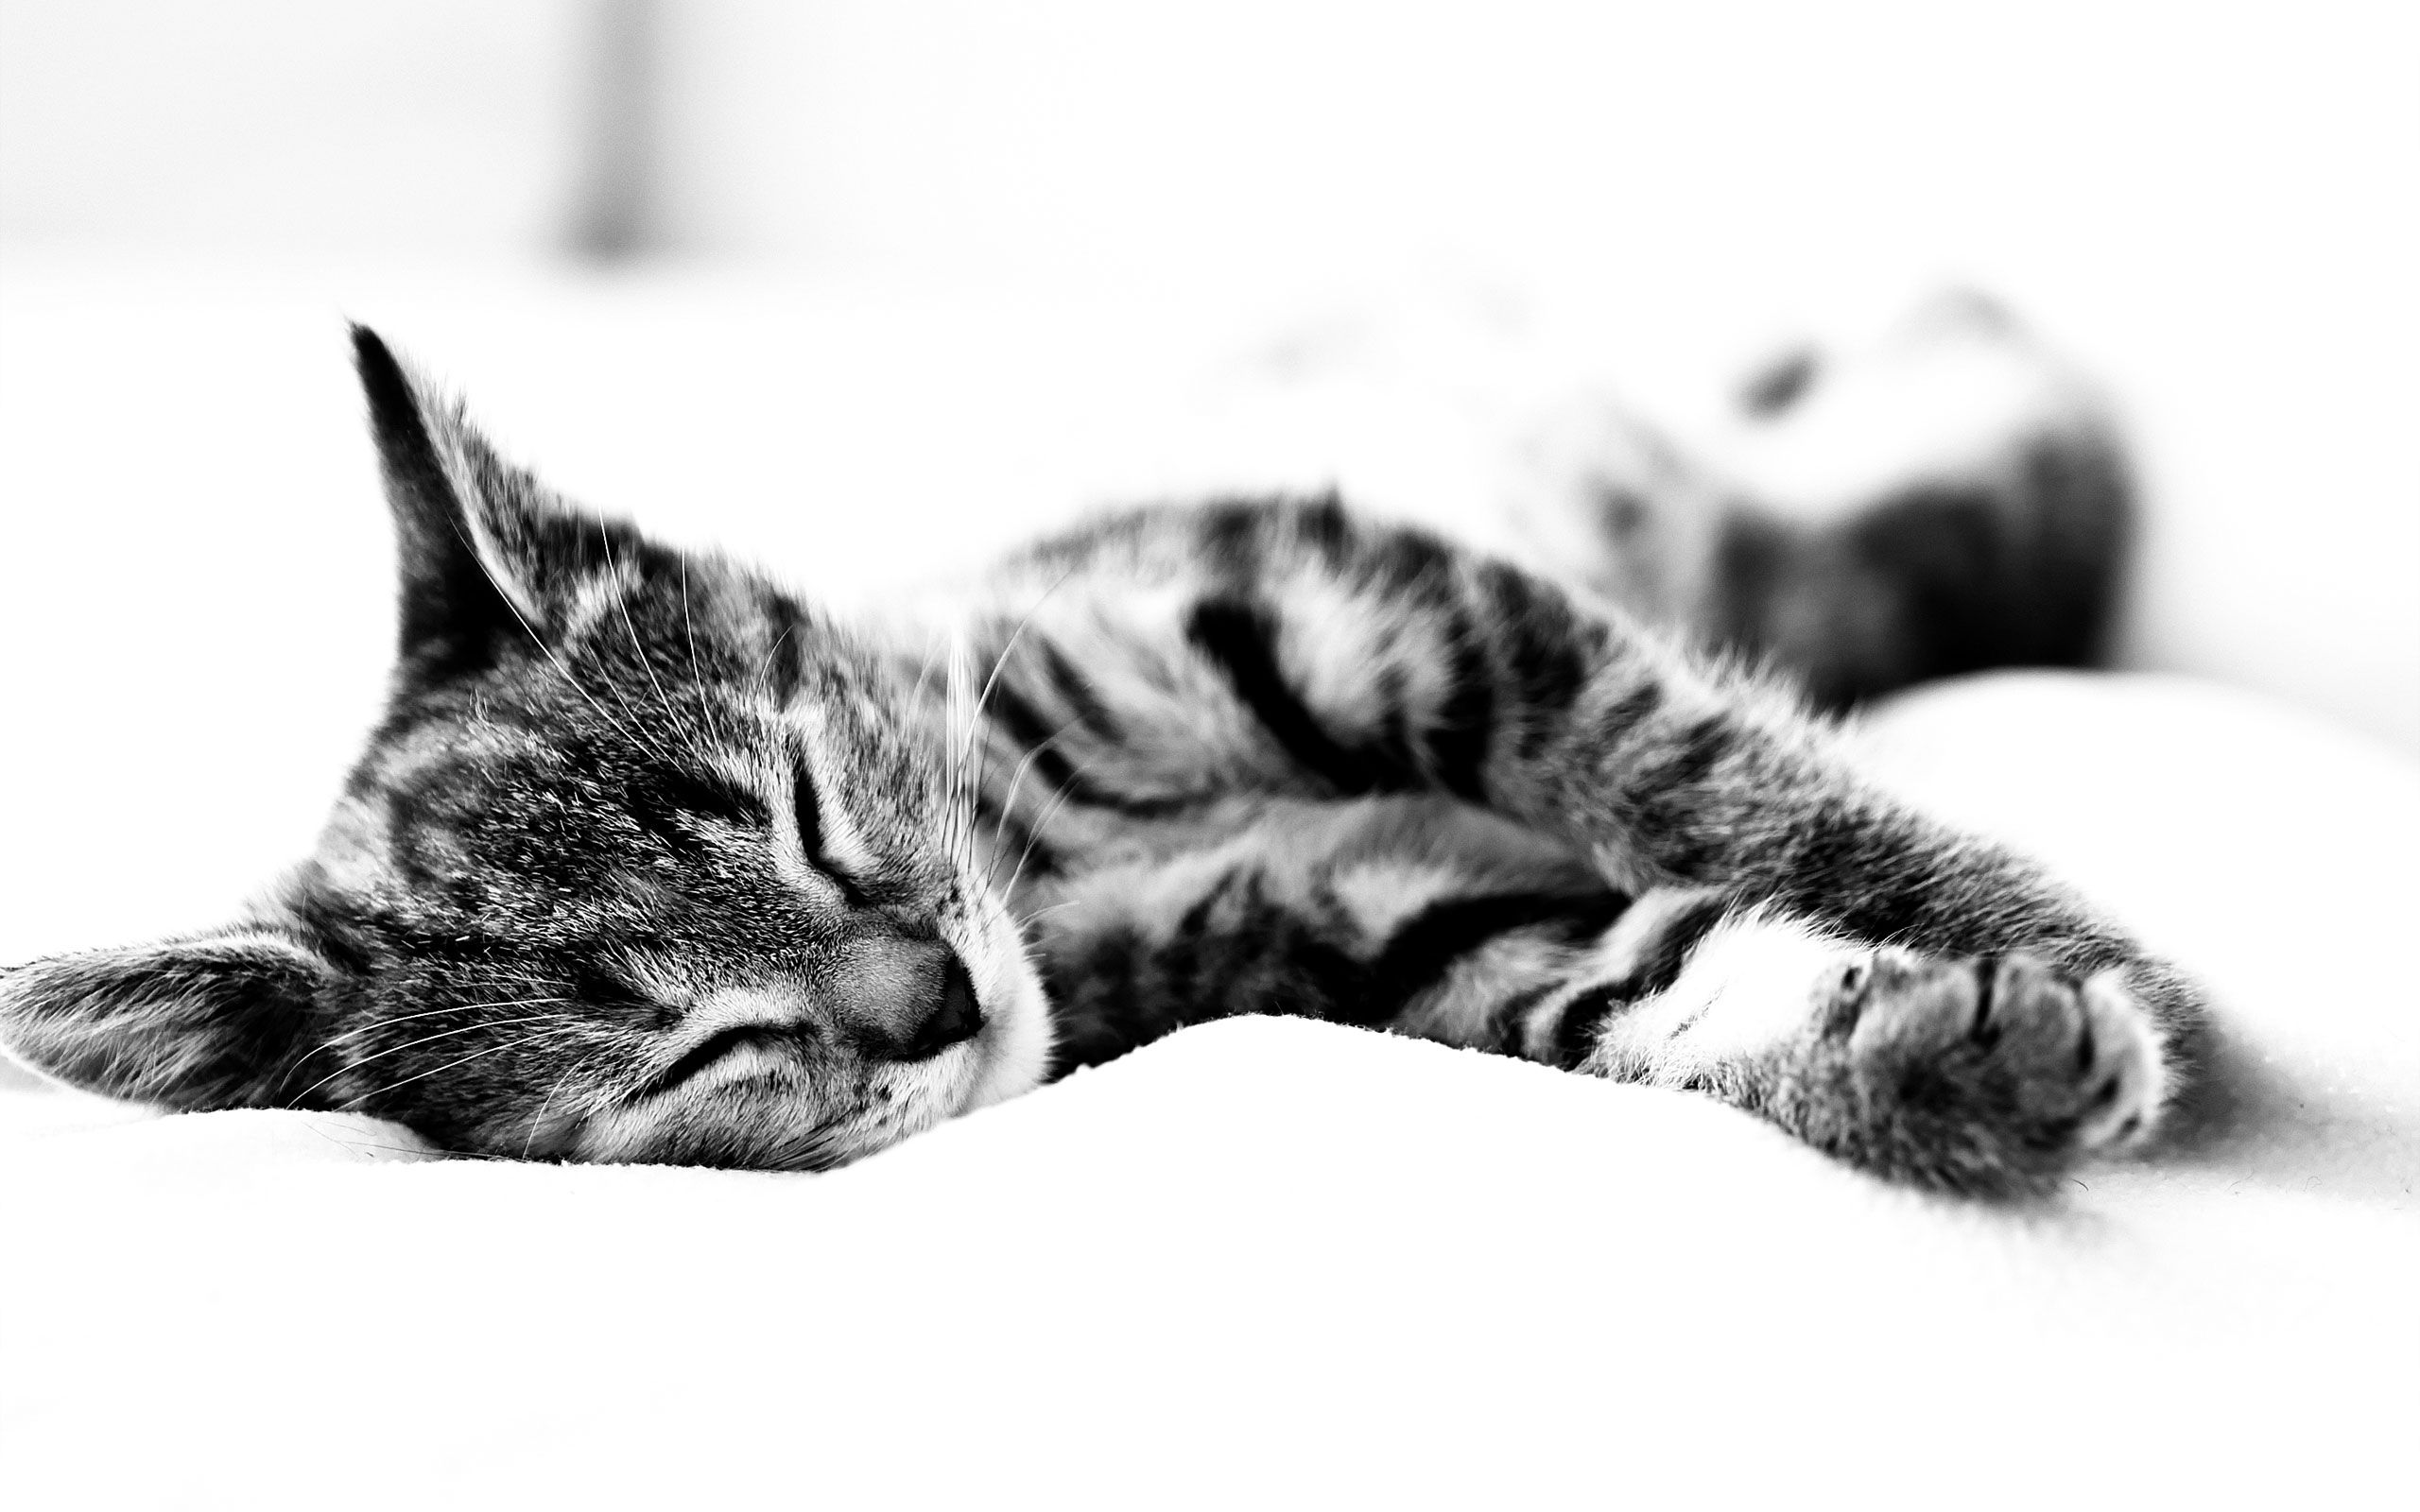 animals, cat, to lie down, lie, bw, chb, sleep, dream, blanket